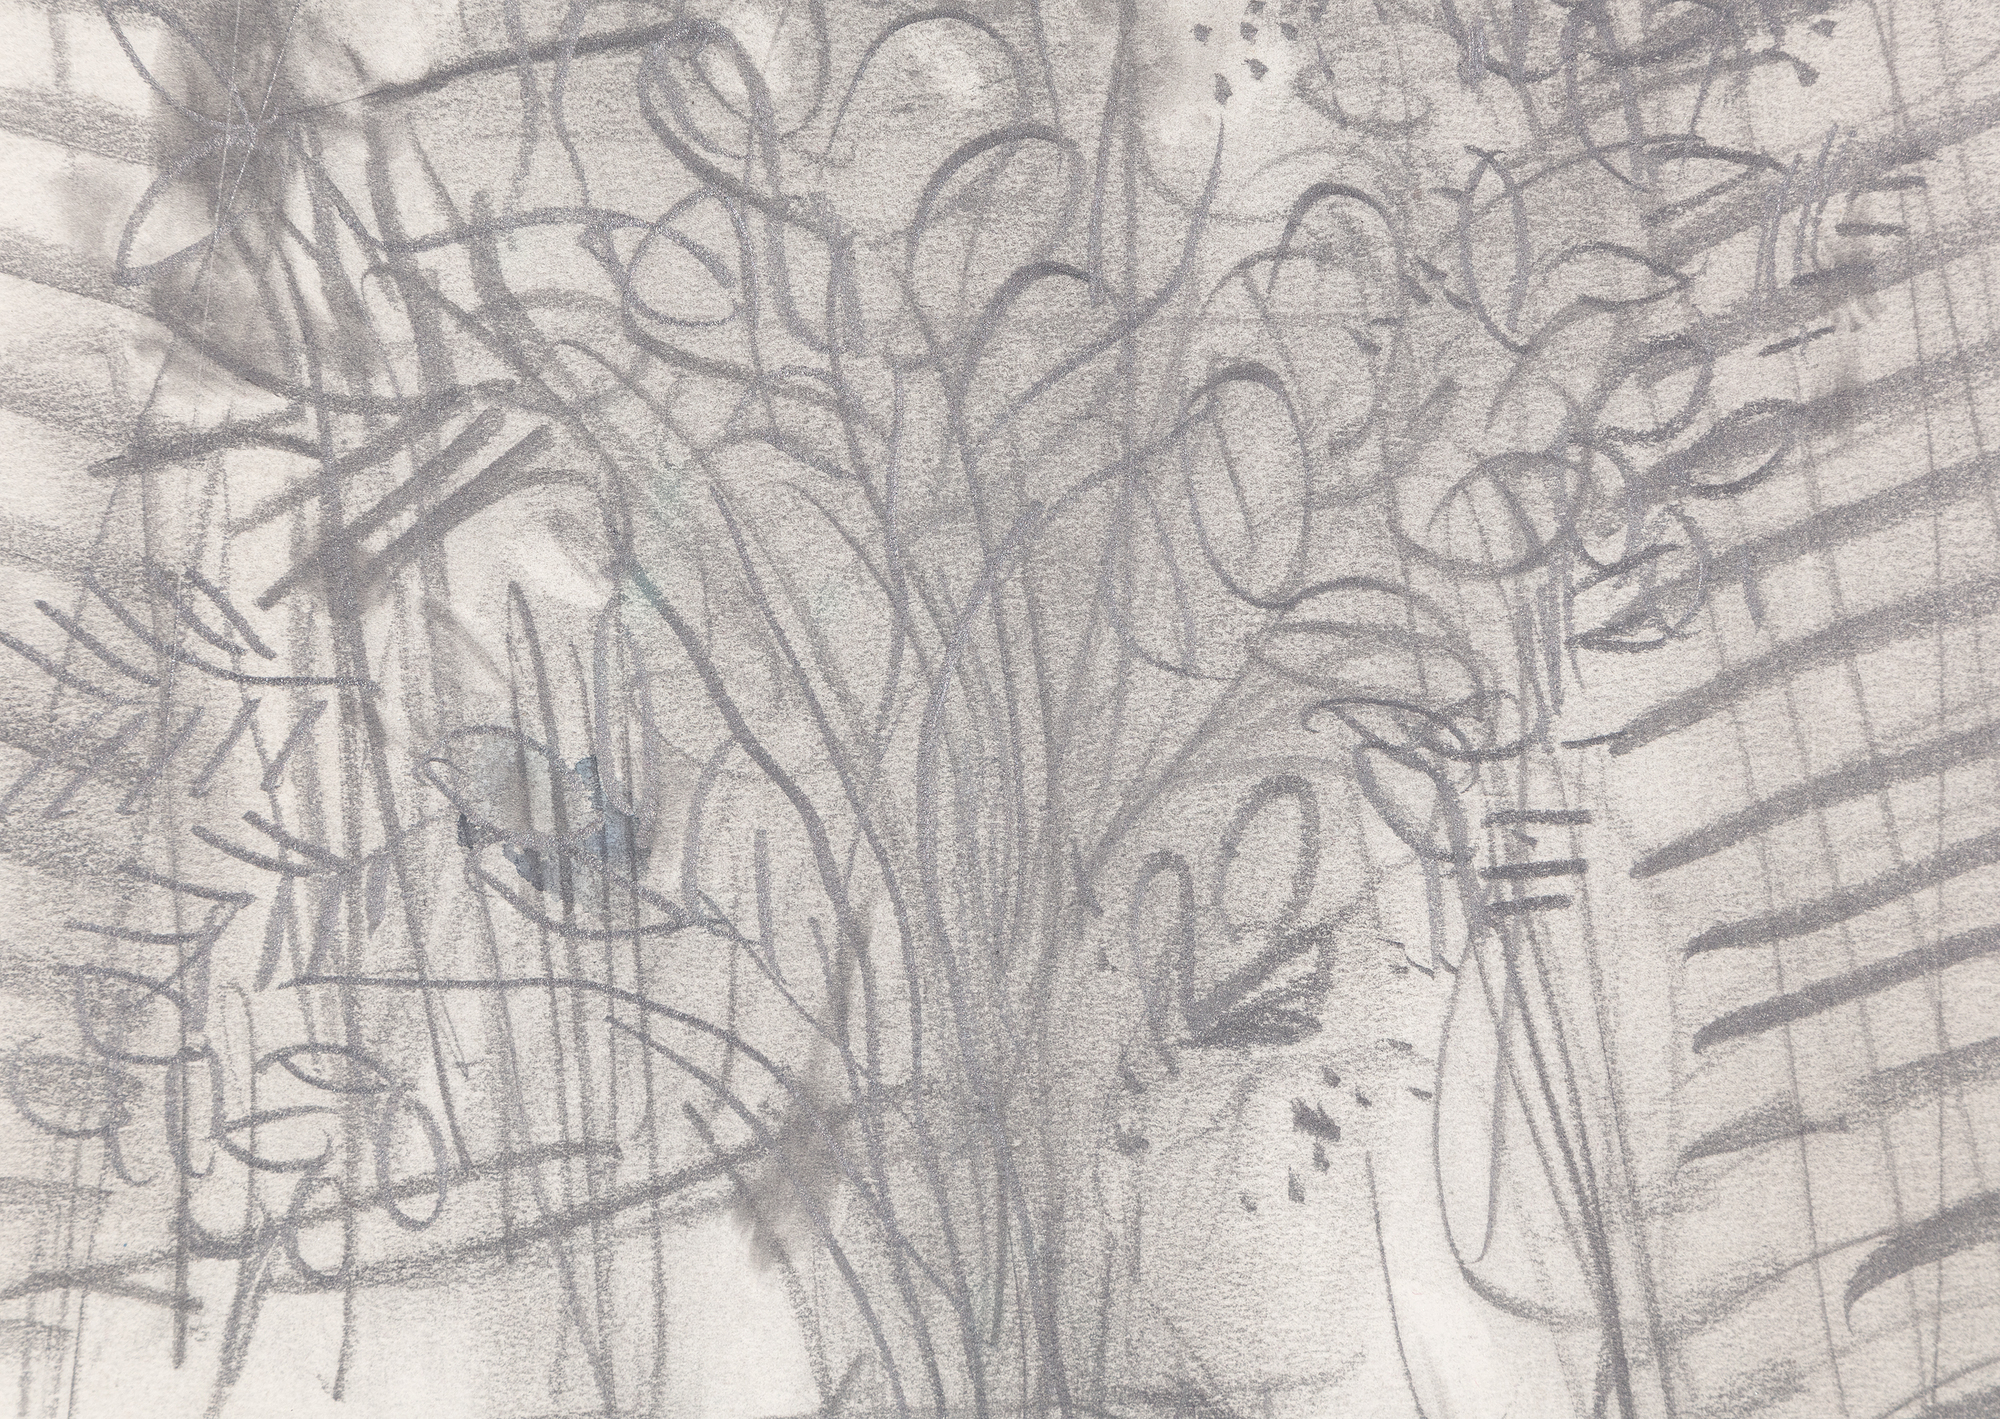 MARC CHAGALL - Les Amoureux sur le divan - aquarelle et crayon sur papier - 25 1/2 x 19 1/2 in.